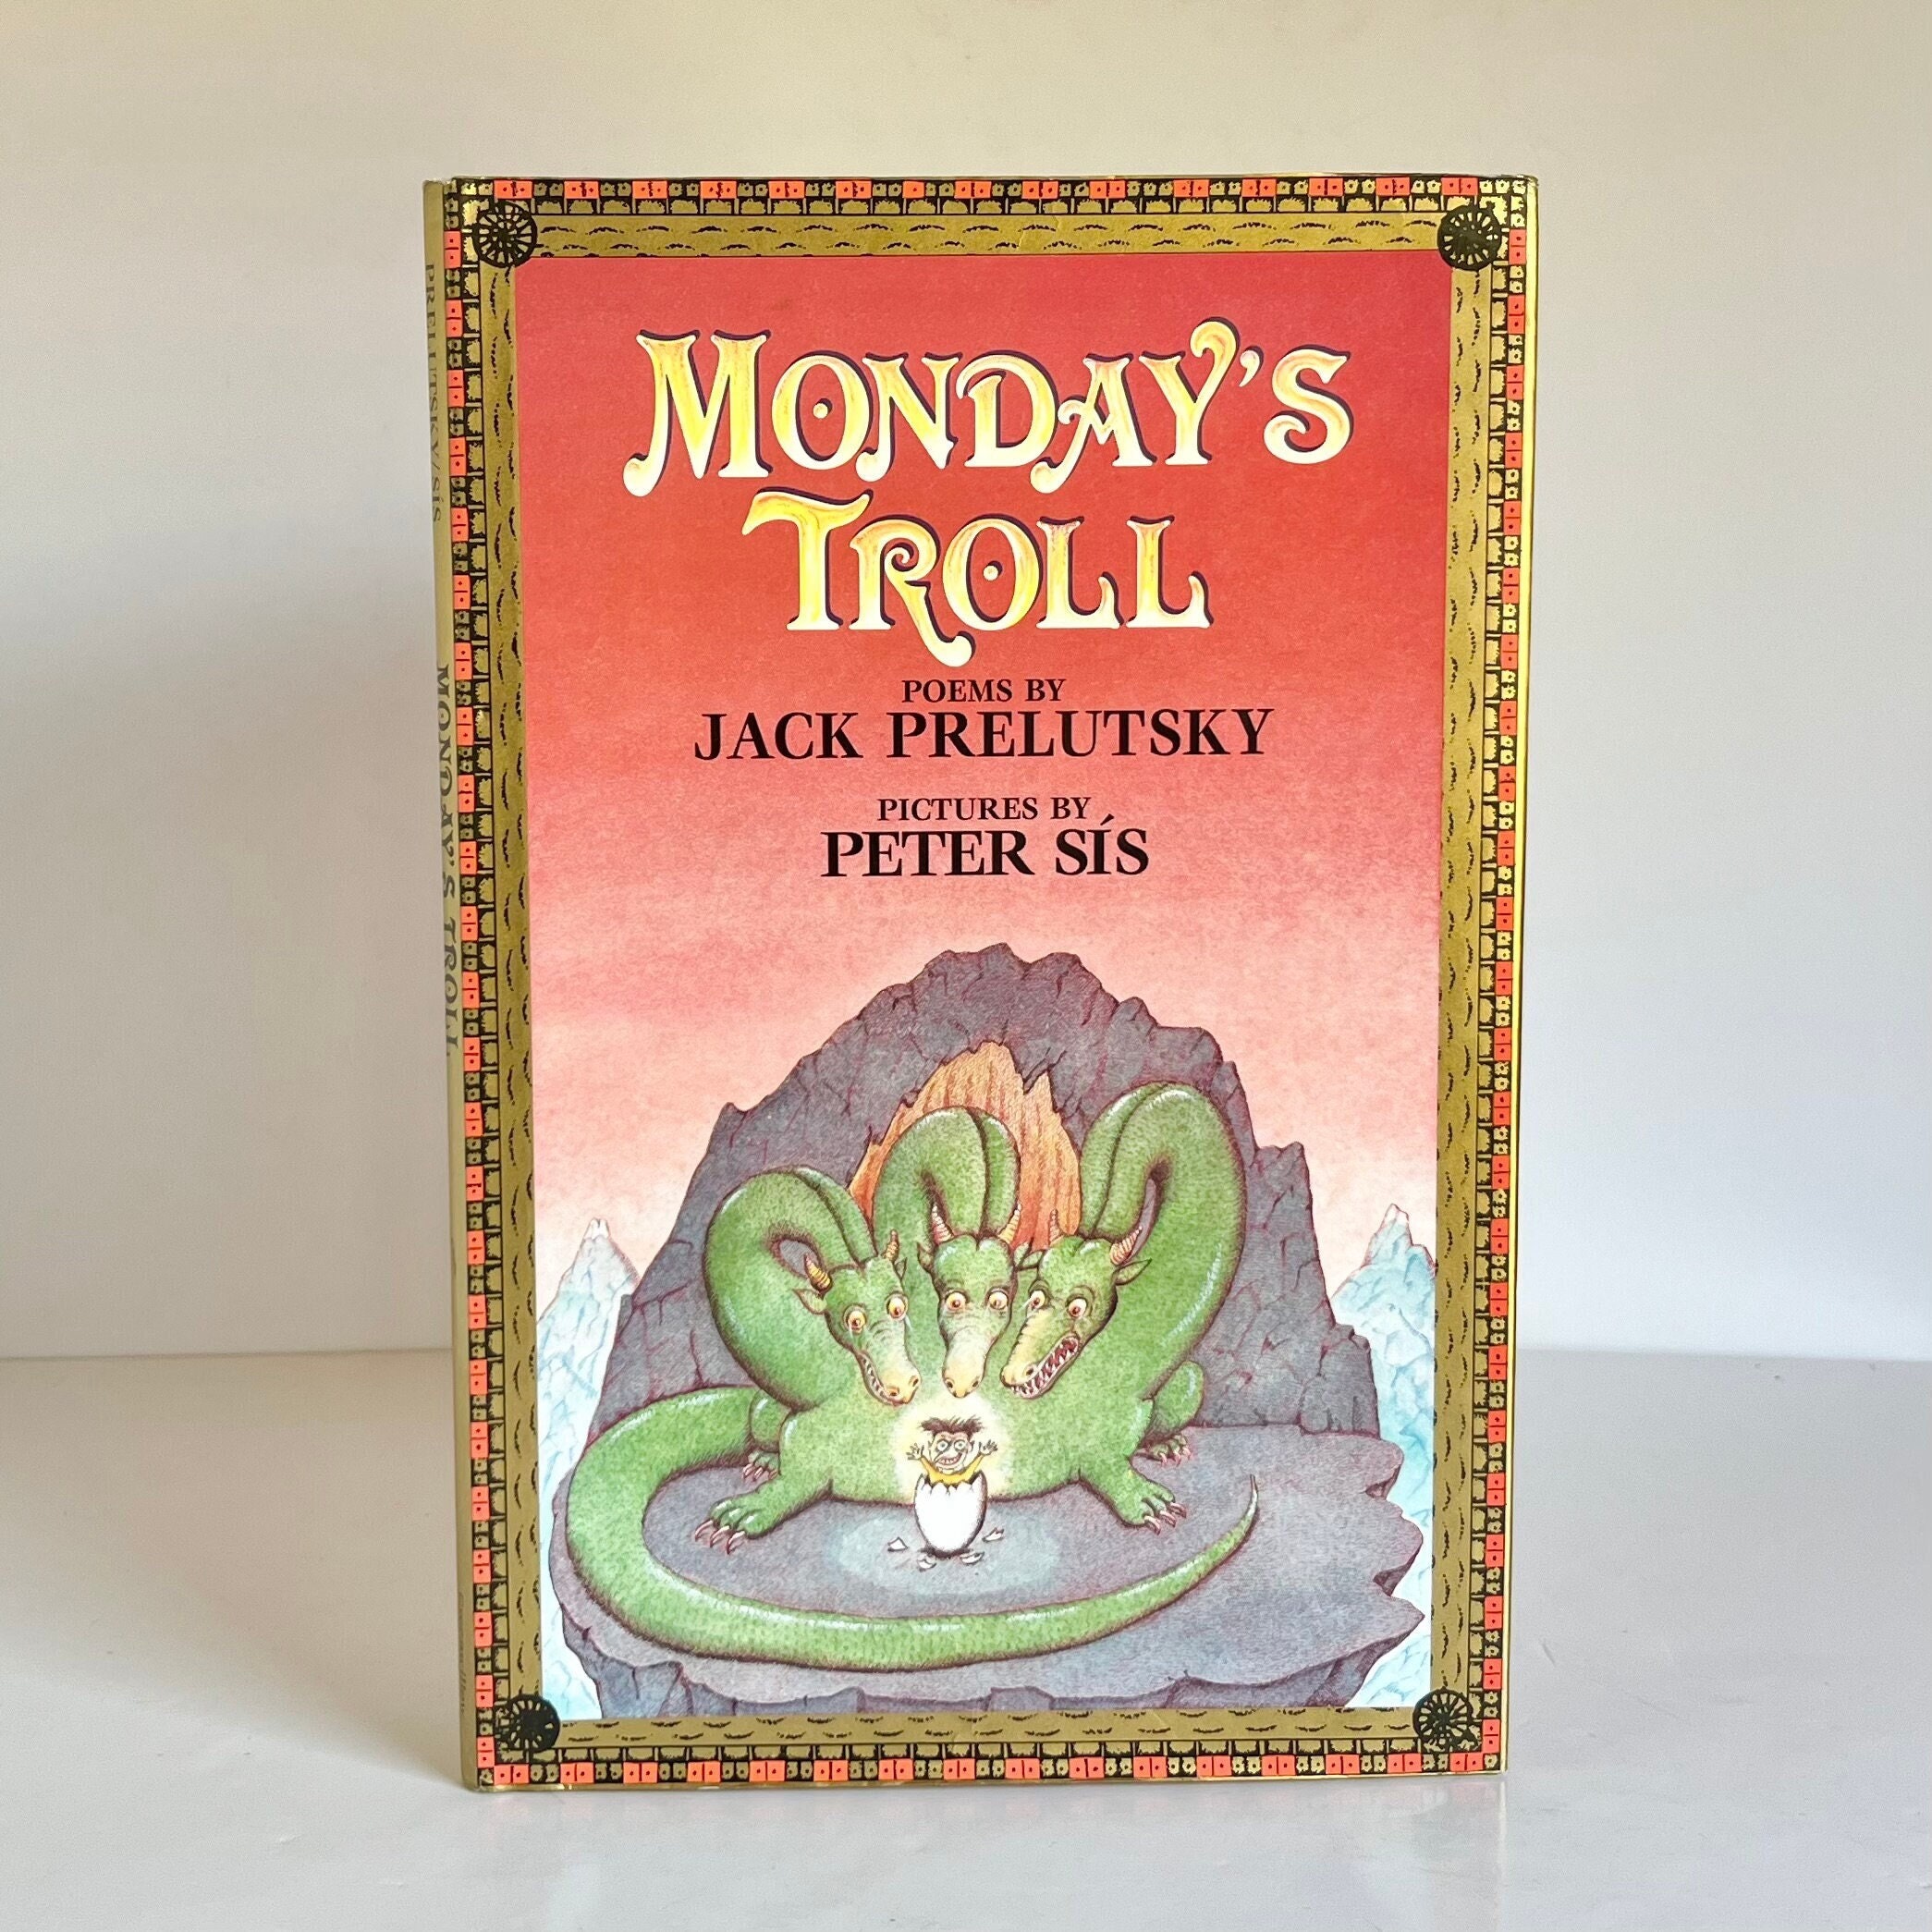 Monday's Troll: Prelutsky, Jack, Sís, Peter: 9780688096441